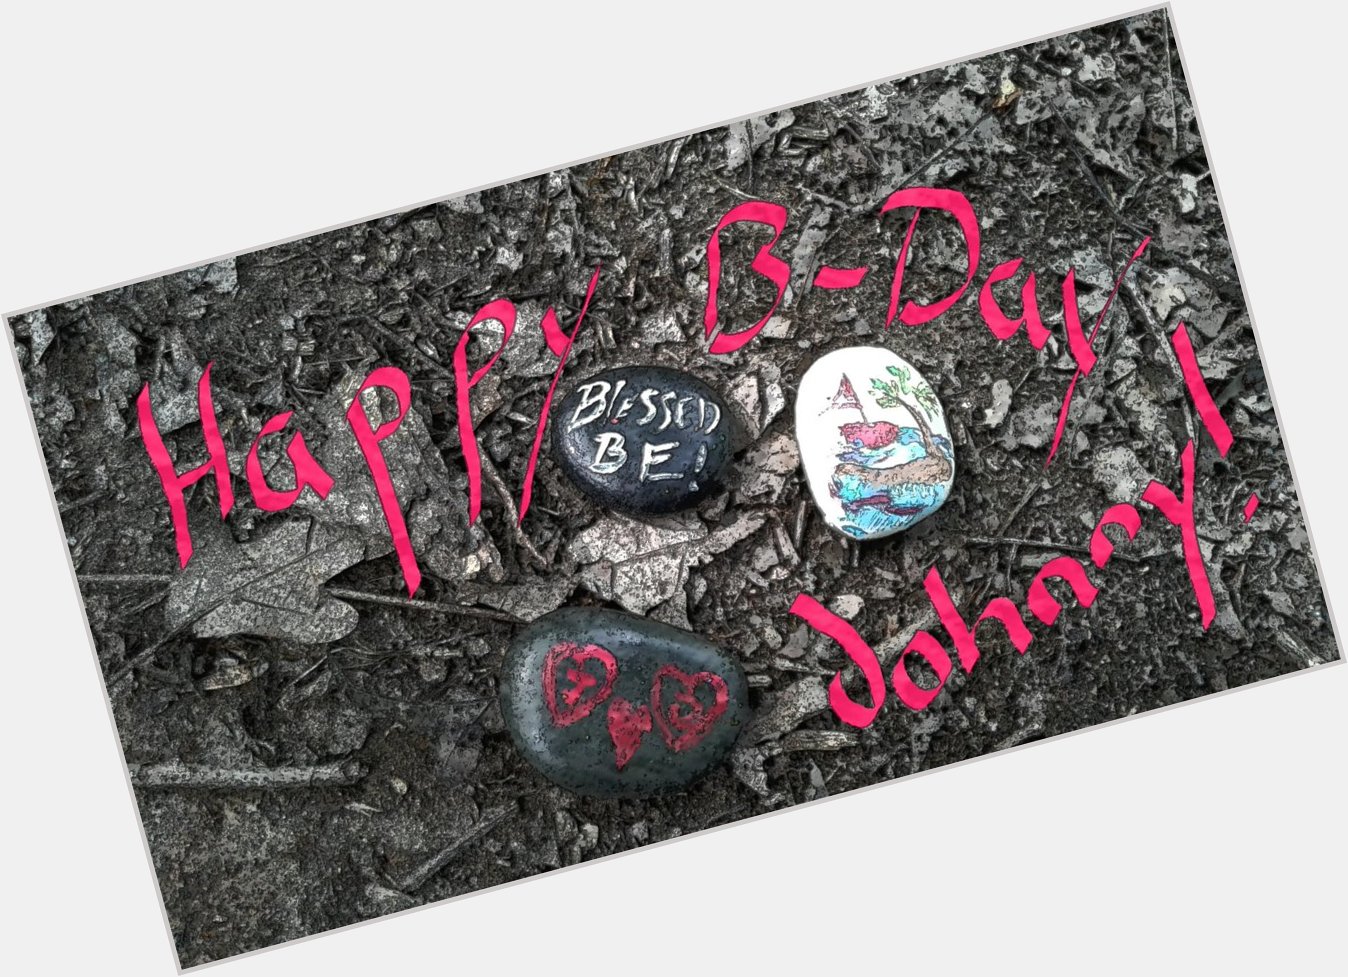 Happy Birthday Johnny! 
# Johnny Depp  